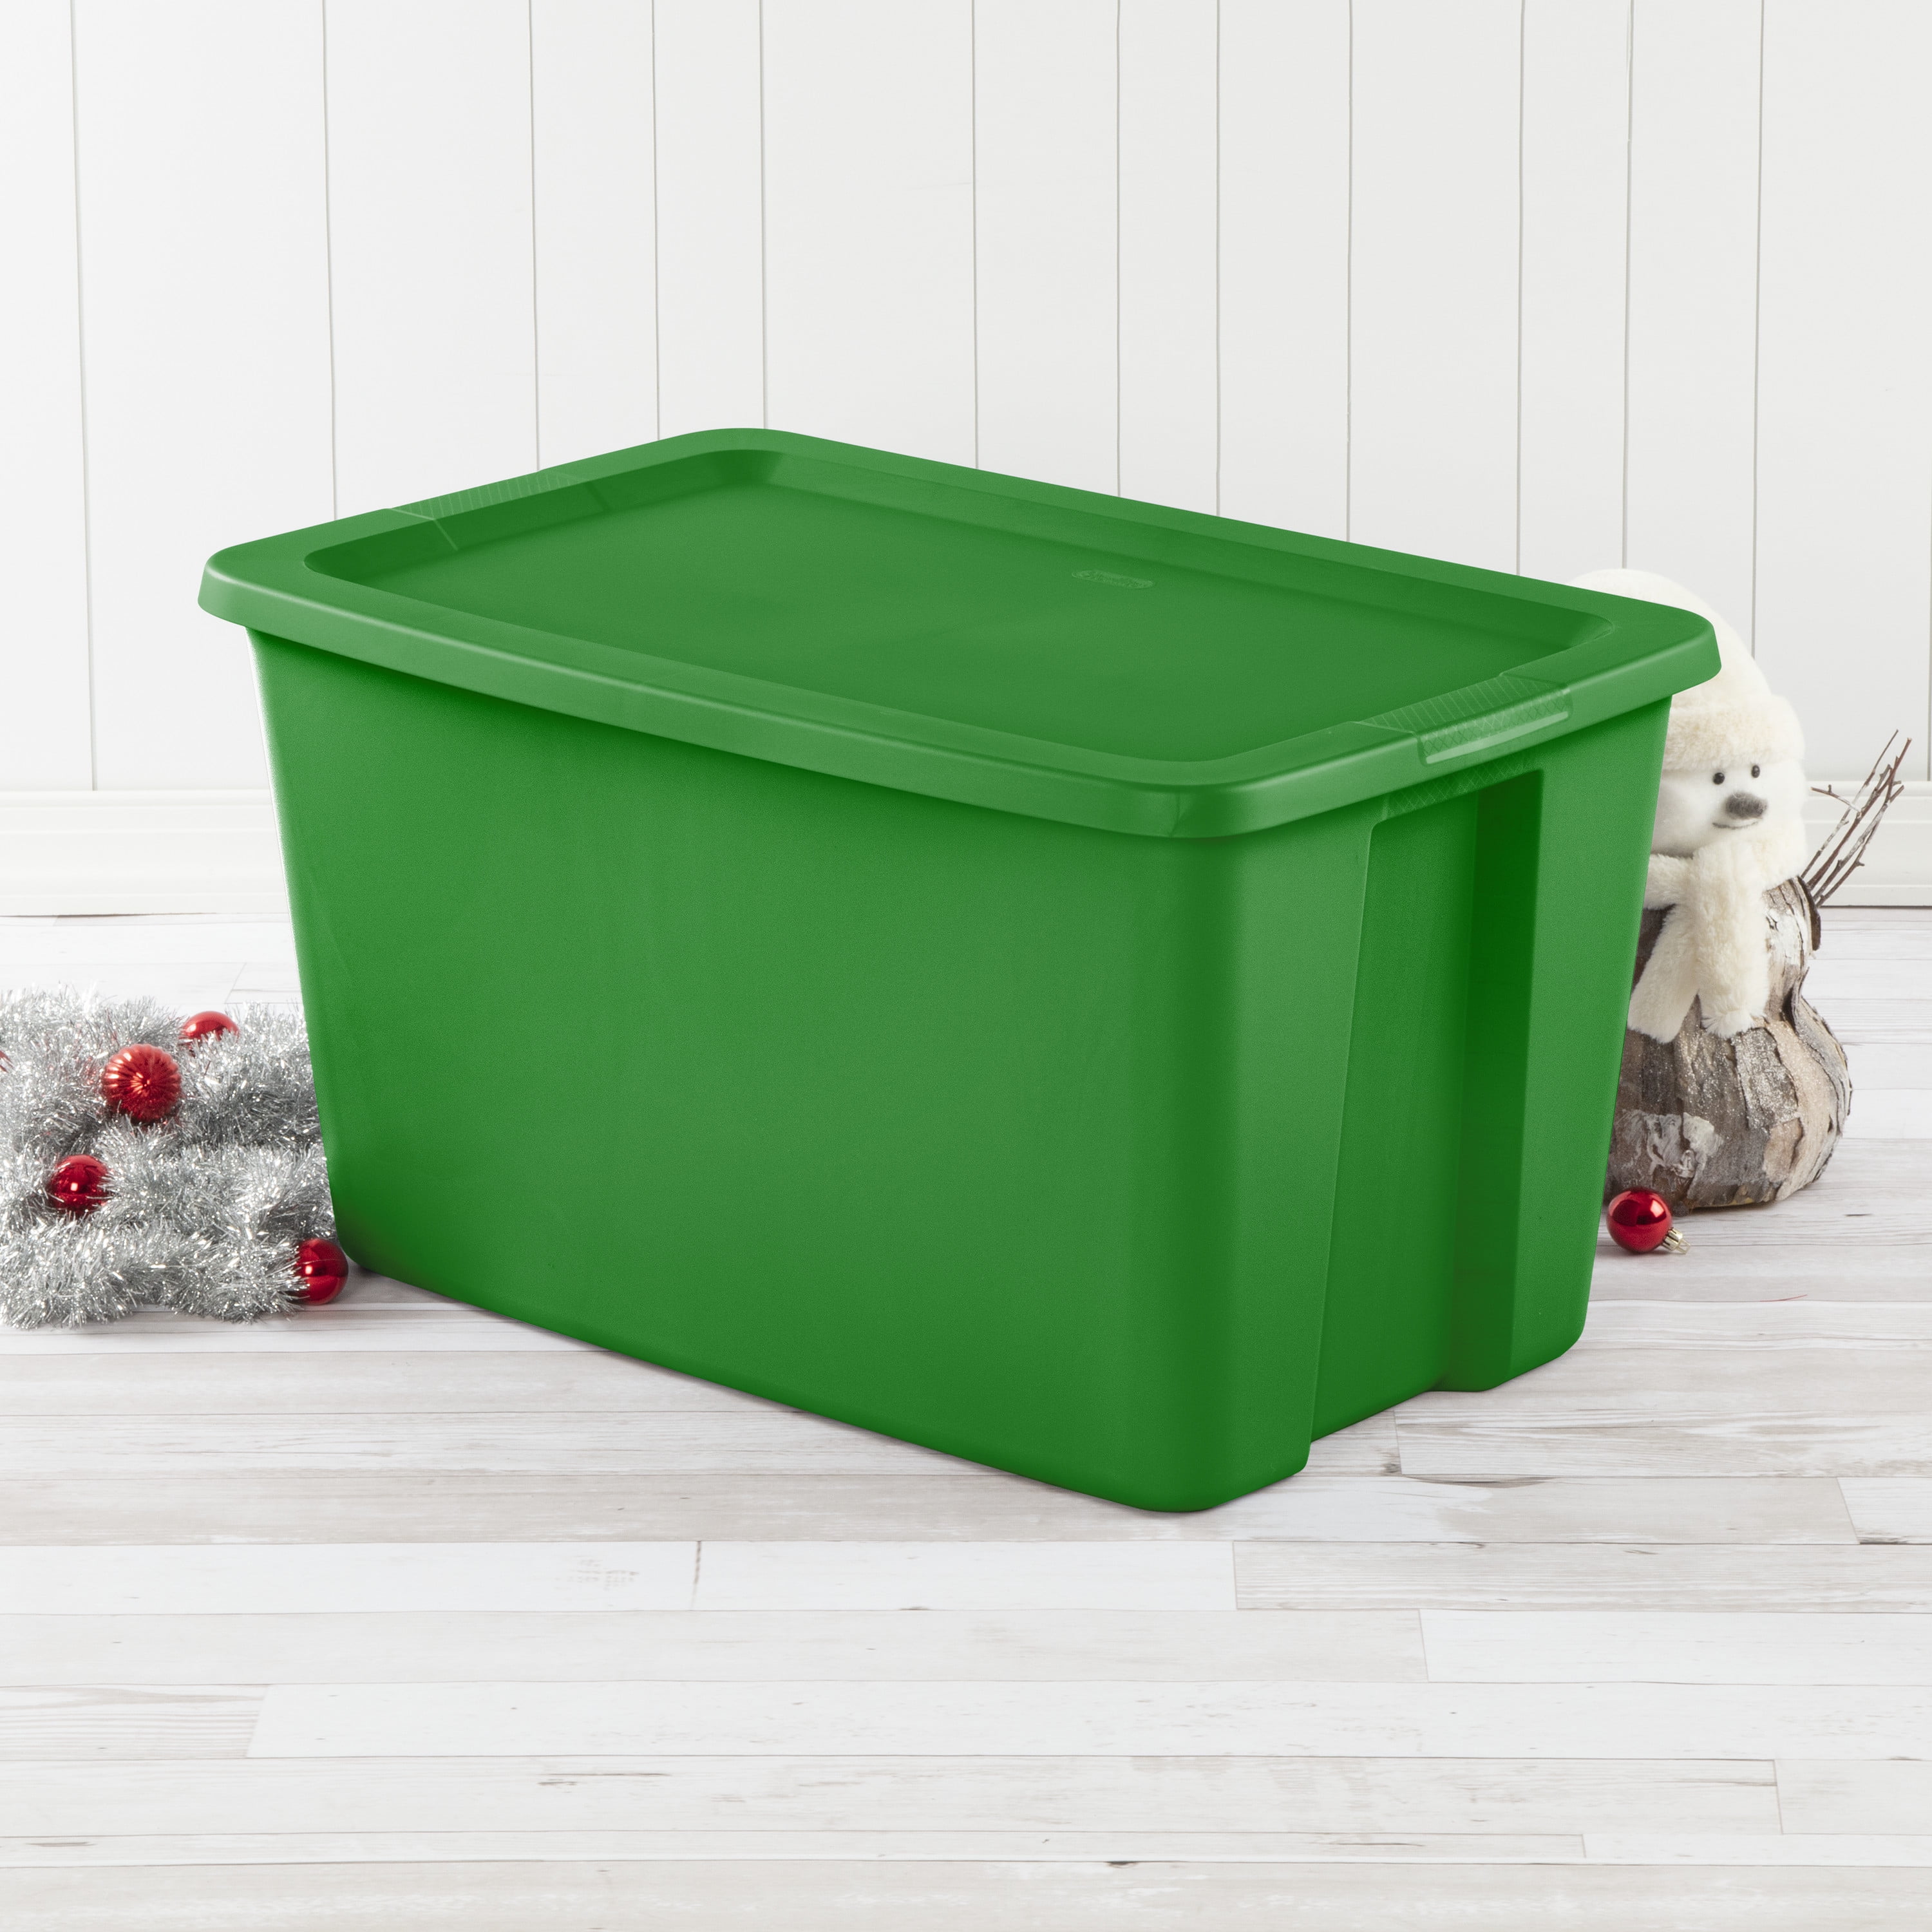 NEW Sterilite 18 Gallon Tote Box Plastic, Elf Green, Set of 8,Free